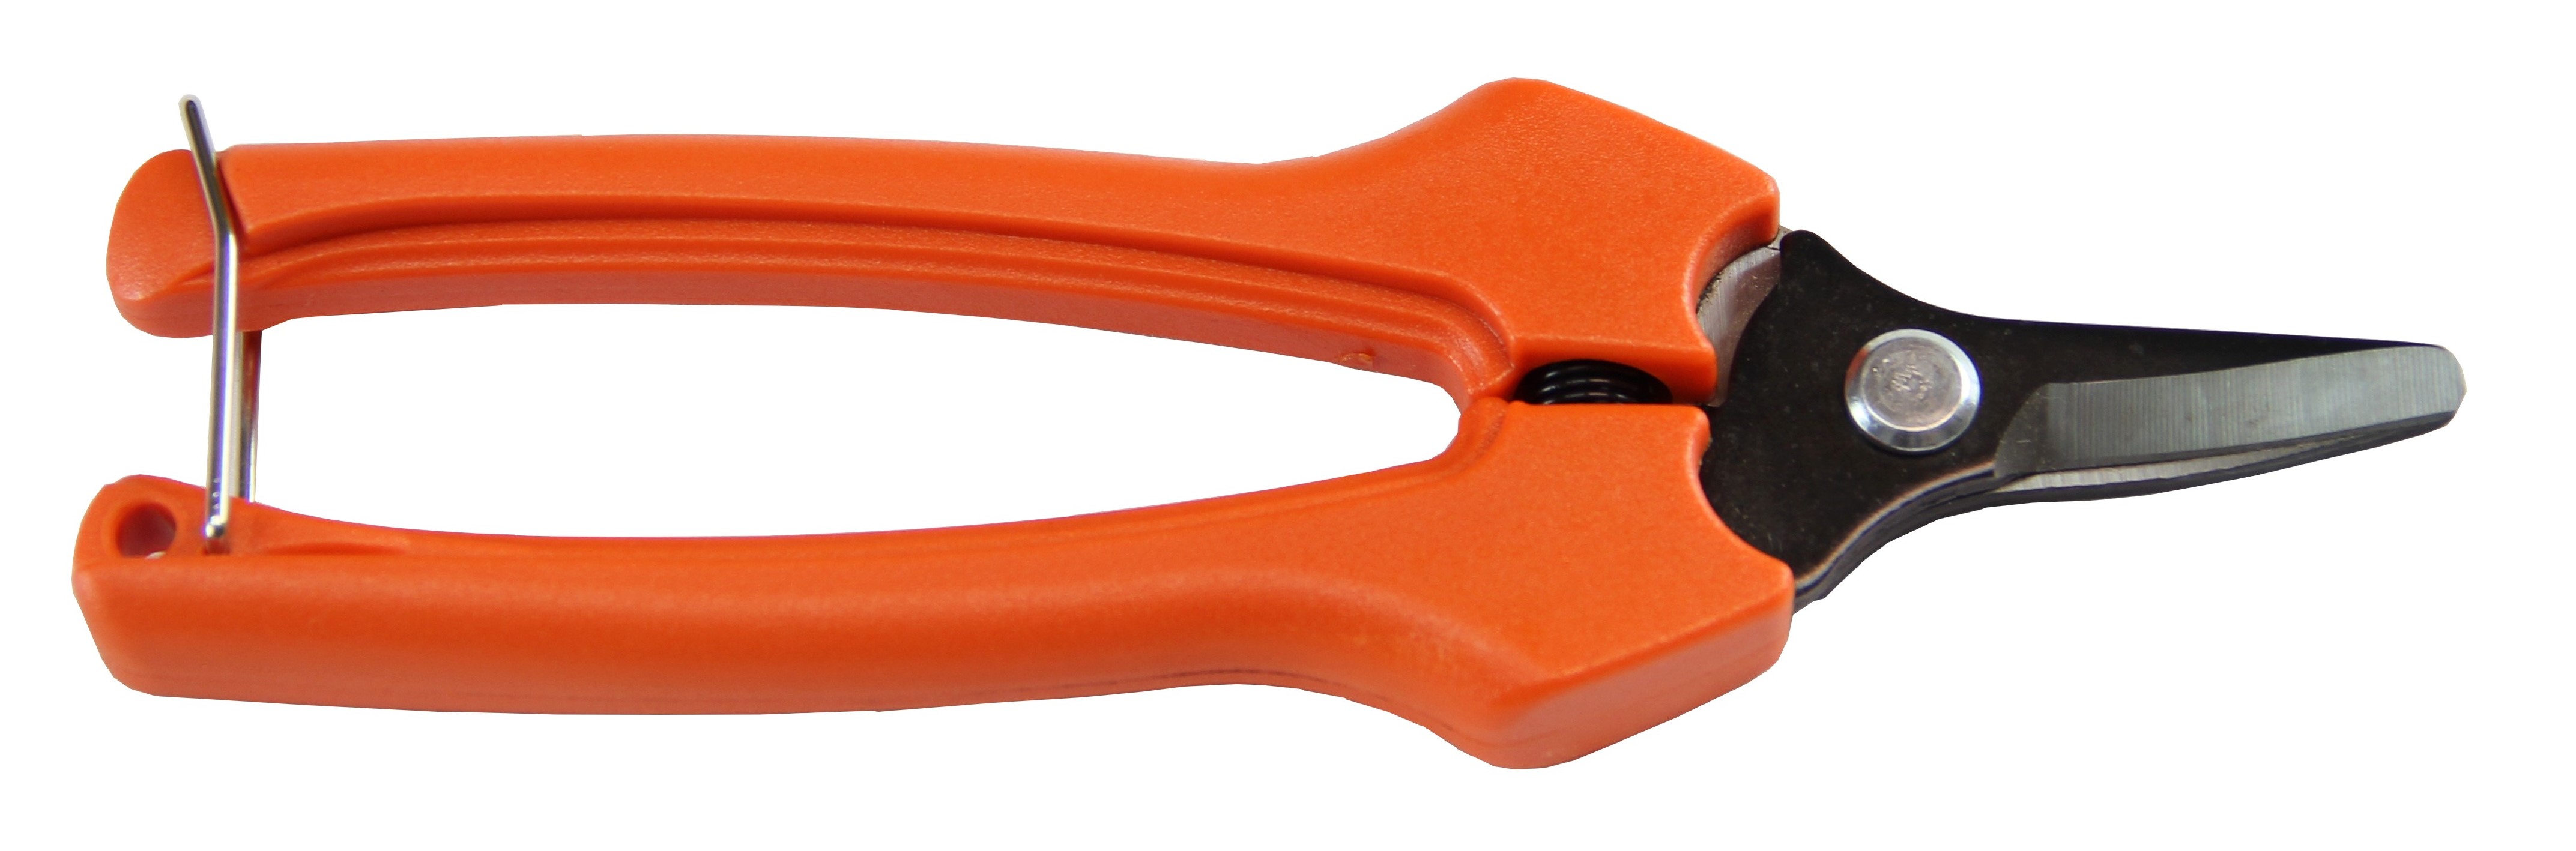 6.5” Curved Fruit Scissors